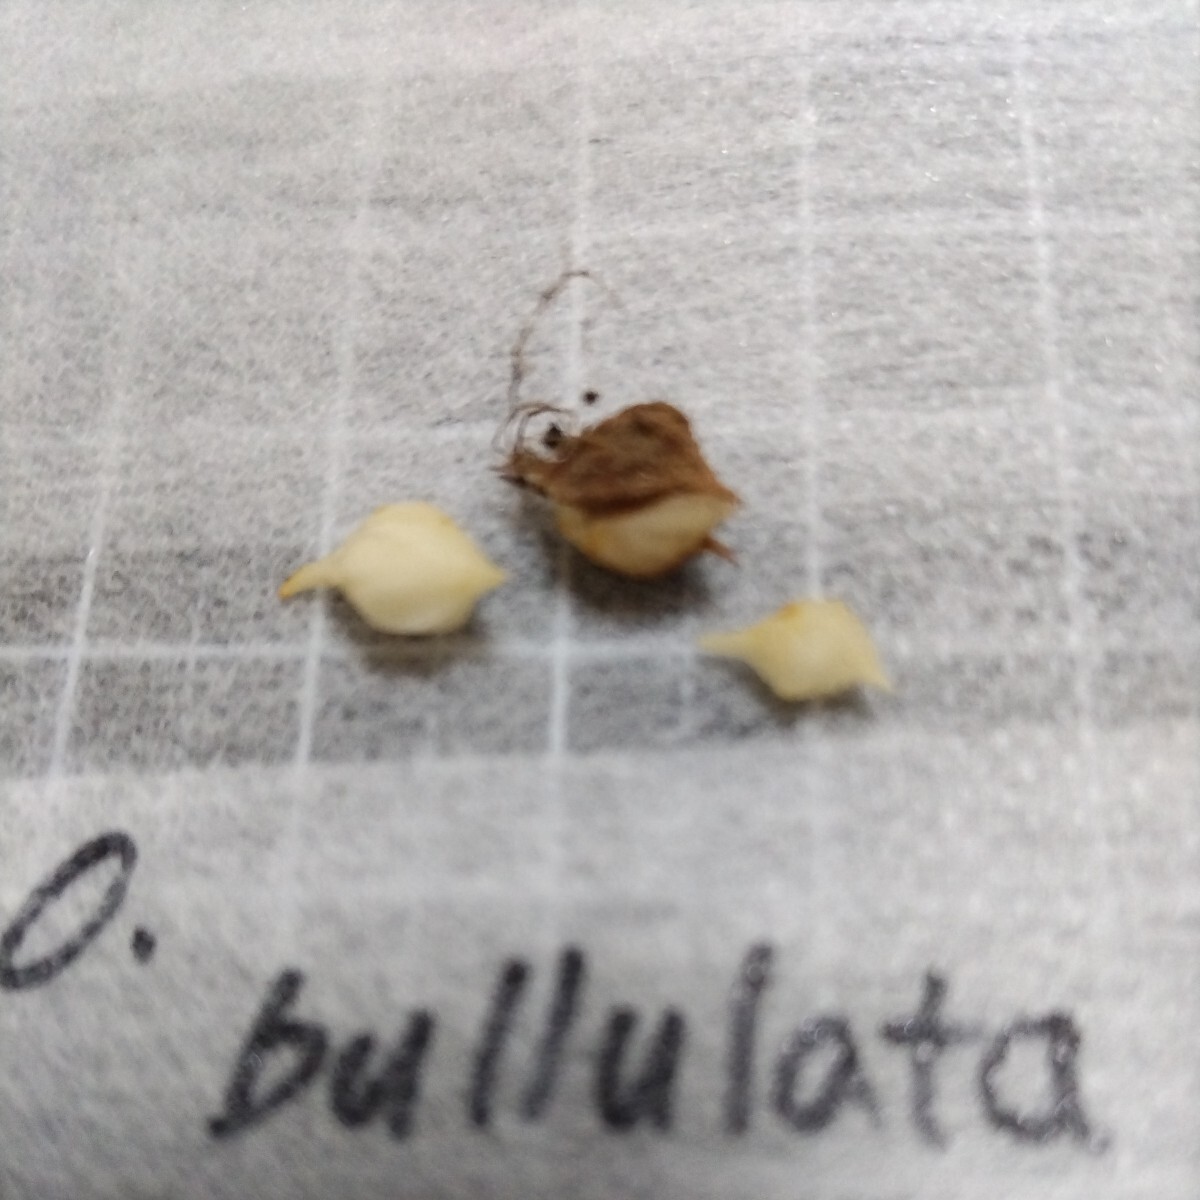 Oxalis bullulata. луковица ②